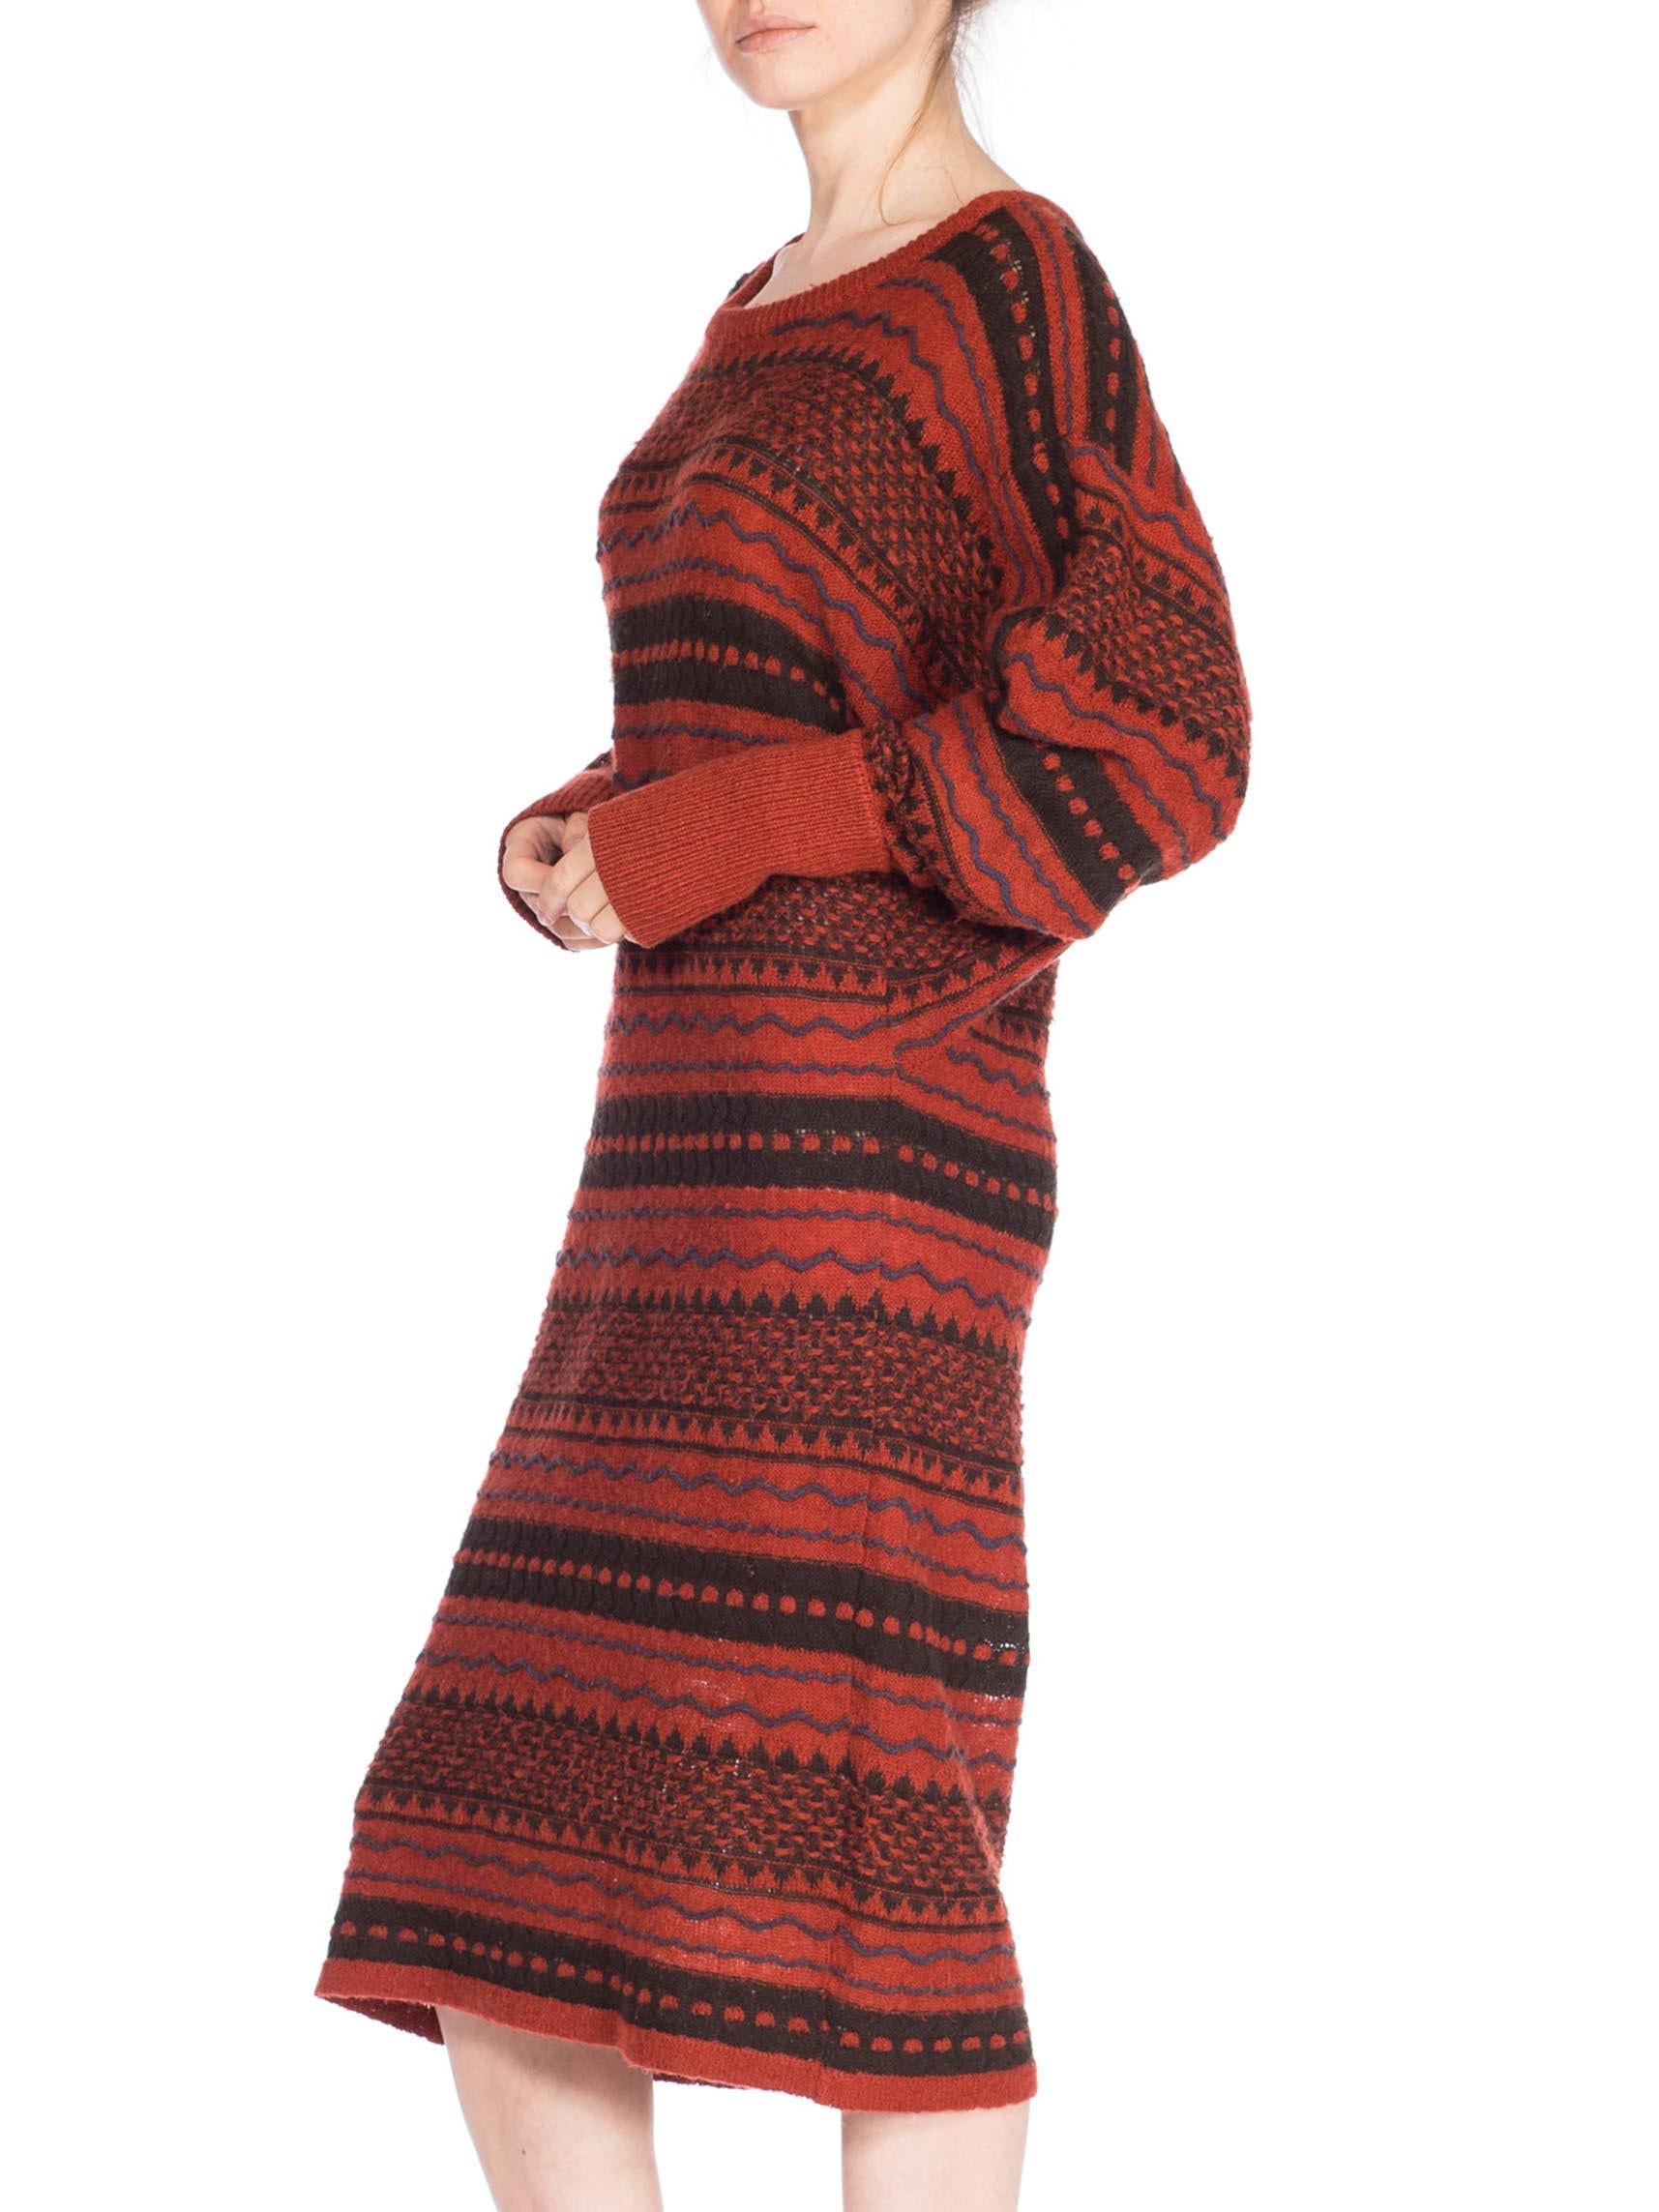 70s knit dress